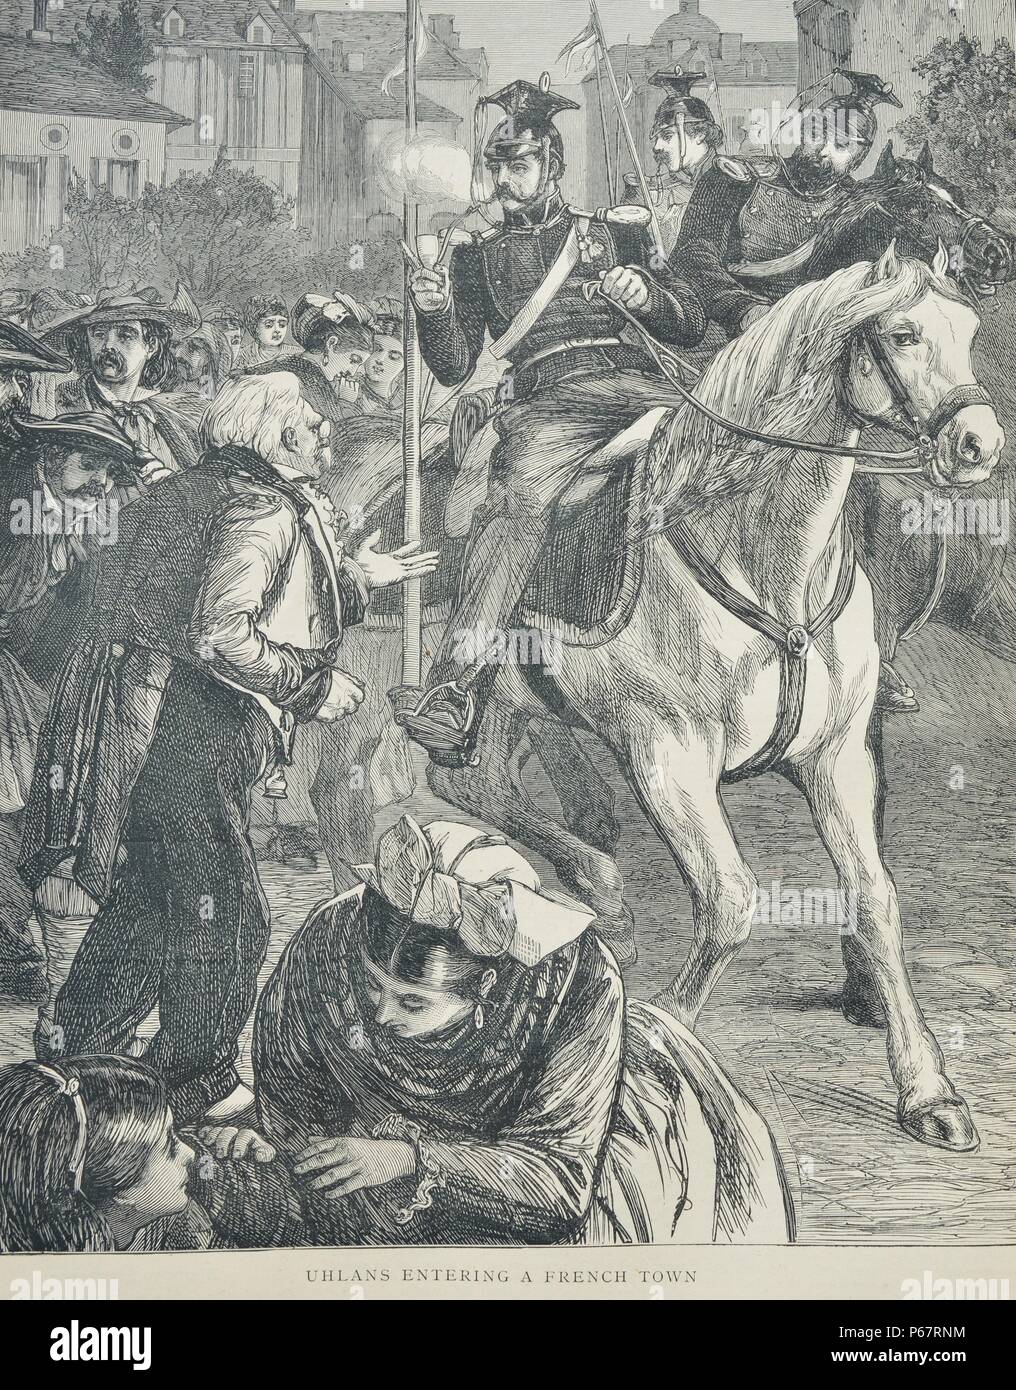 Gravure représente l'arrivée des Uhlans dans une ville française. Les Uhlans polonais étaient armées de cavalerie légère avec des lances, sabres et pistolets. Le titre a été utilisé plus tard par les régiments de lanciers en russe, prussien, autrichien et armées. Datée 1870 Banque D'Images